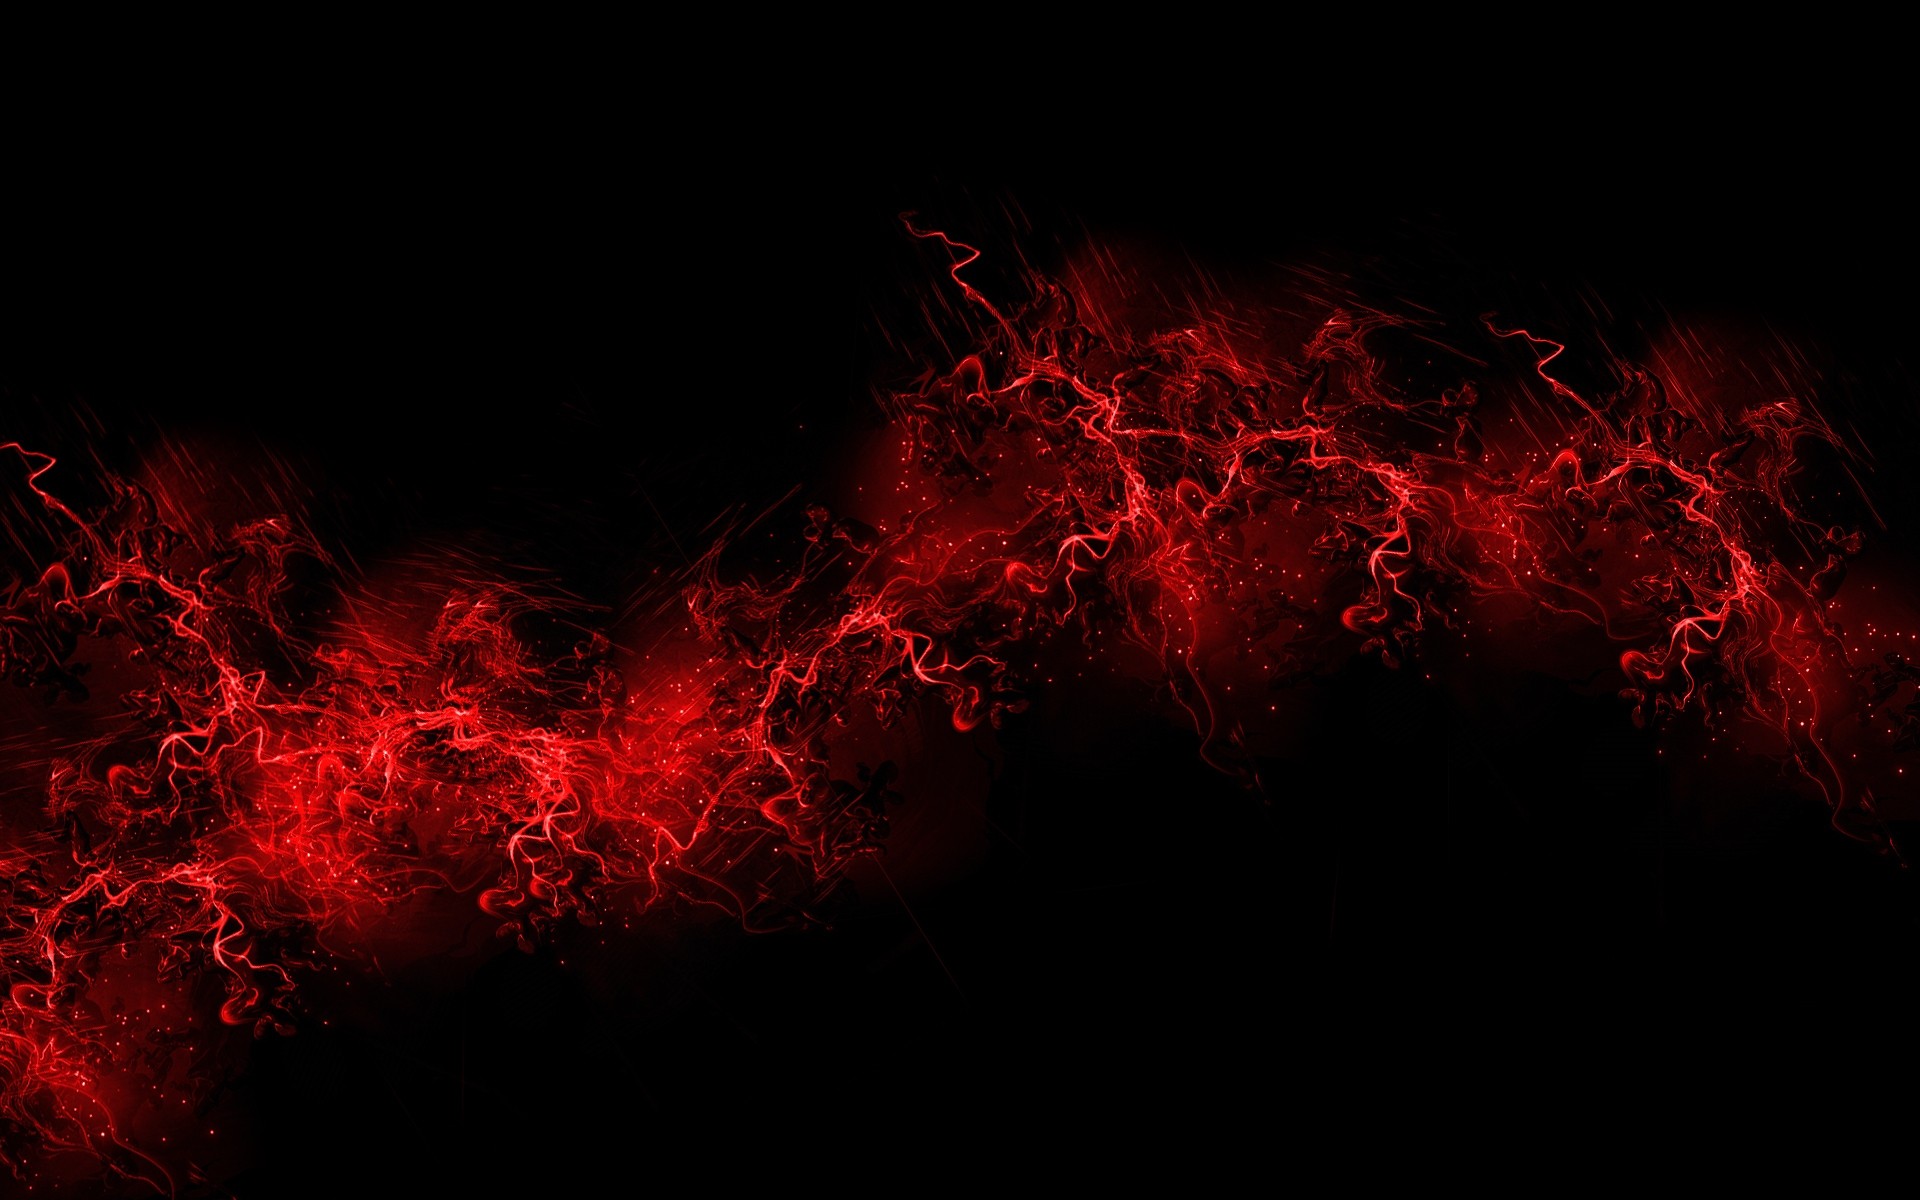 минимализм дым пламя энергии аннотация искусство свет сюрреалистично дизайн движения текстура кривая динамические магия горячая темный волна сожгли фантазия формы фрактал фон простой